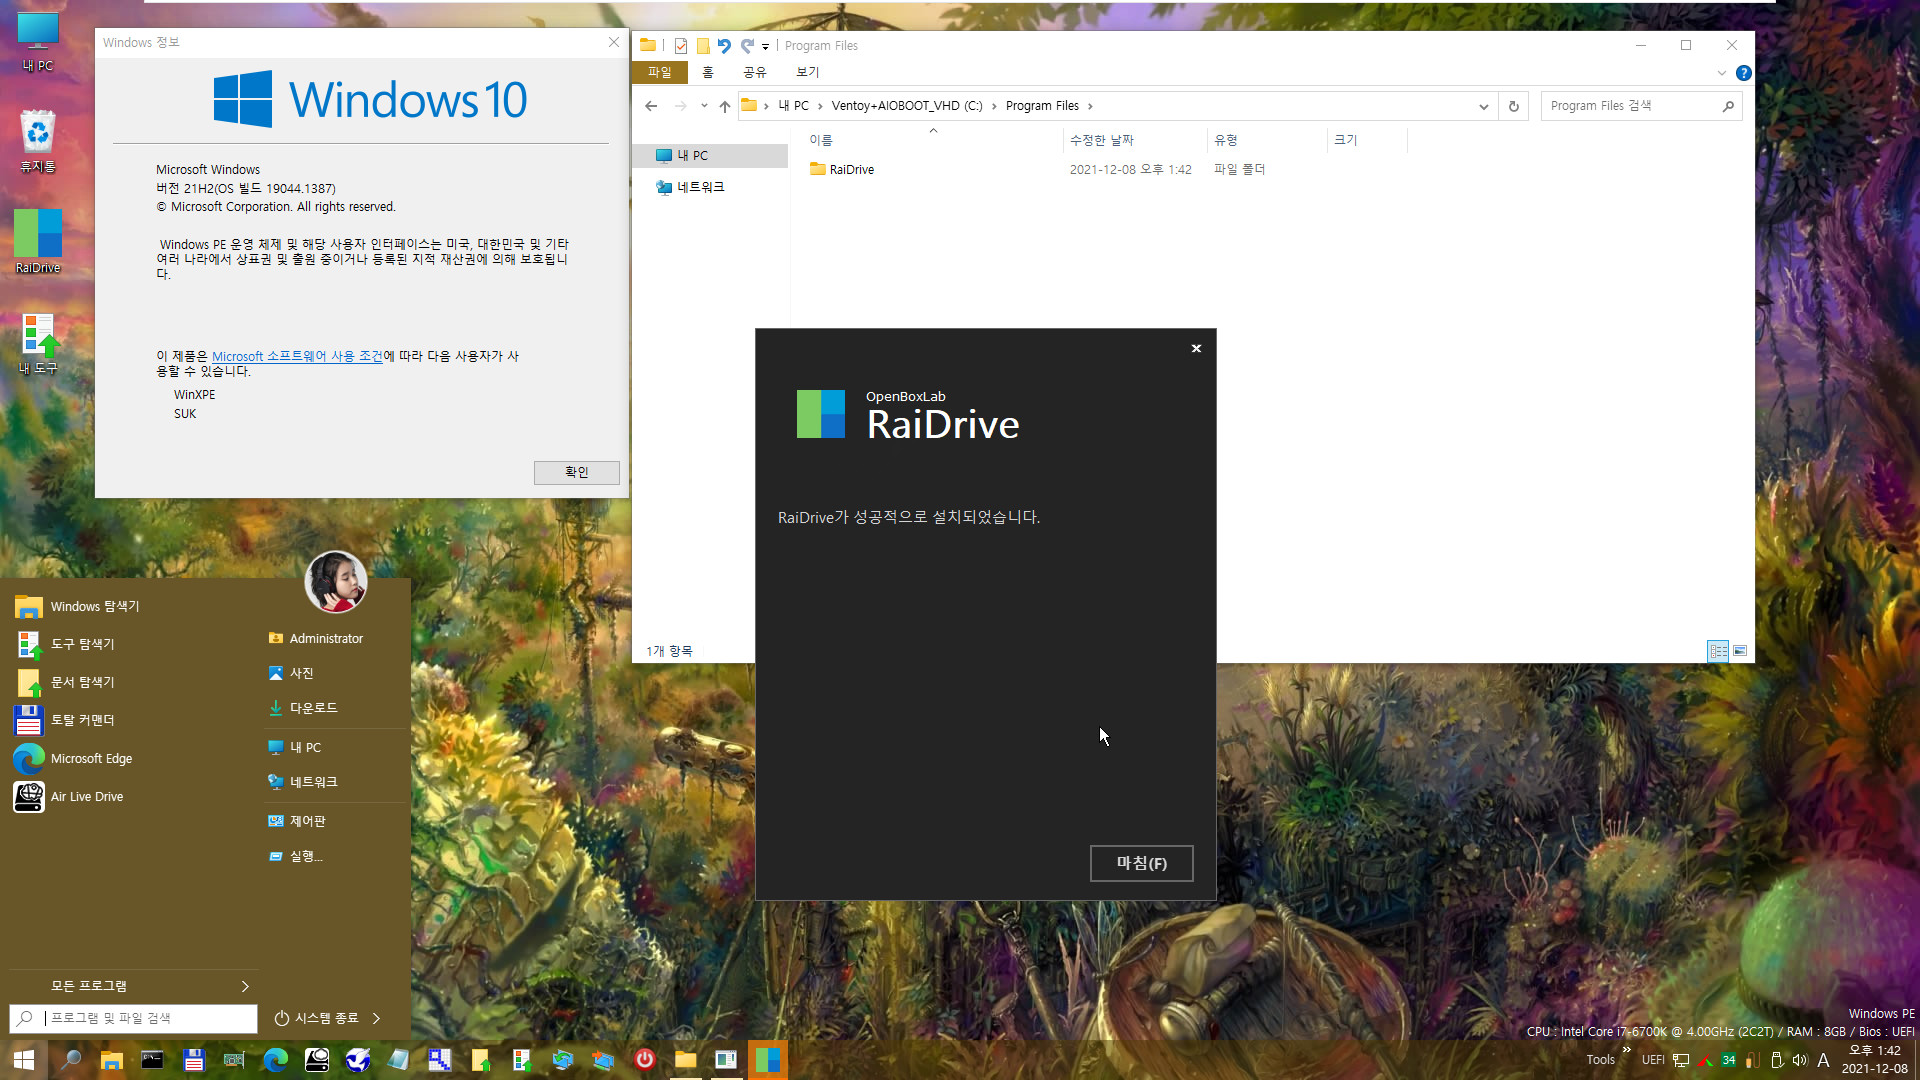 PE에서 RaiDrive 첫 설치 테스트 - WindowsXPE132 으로 Windows 10 (19044.1387) 통합본으로 PE 만들어서 테스트 - 여러번 시도하여 성공함 2021-12-08_134235.jpg